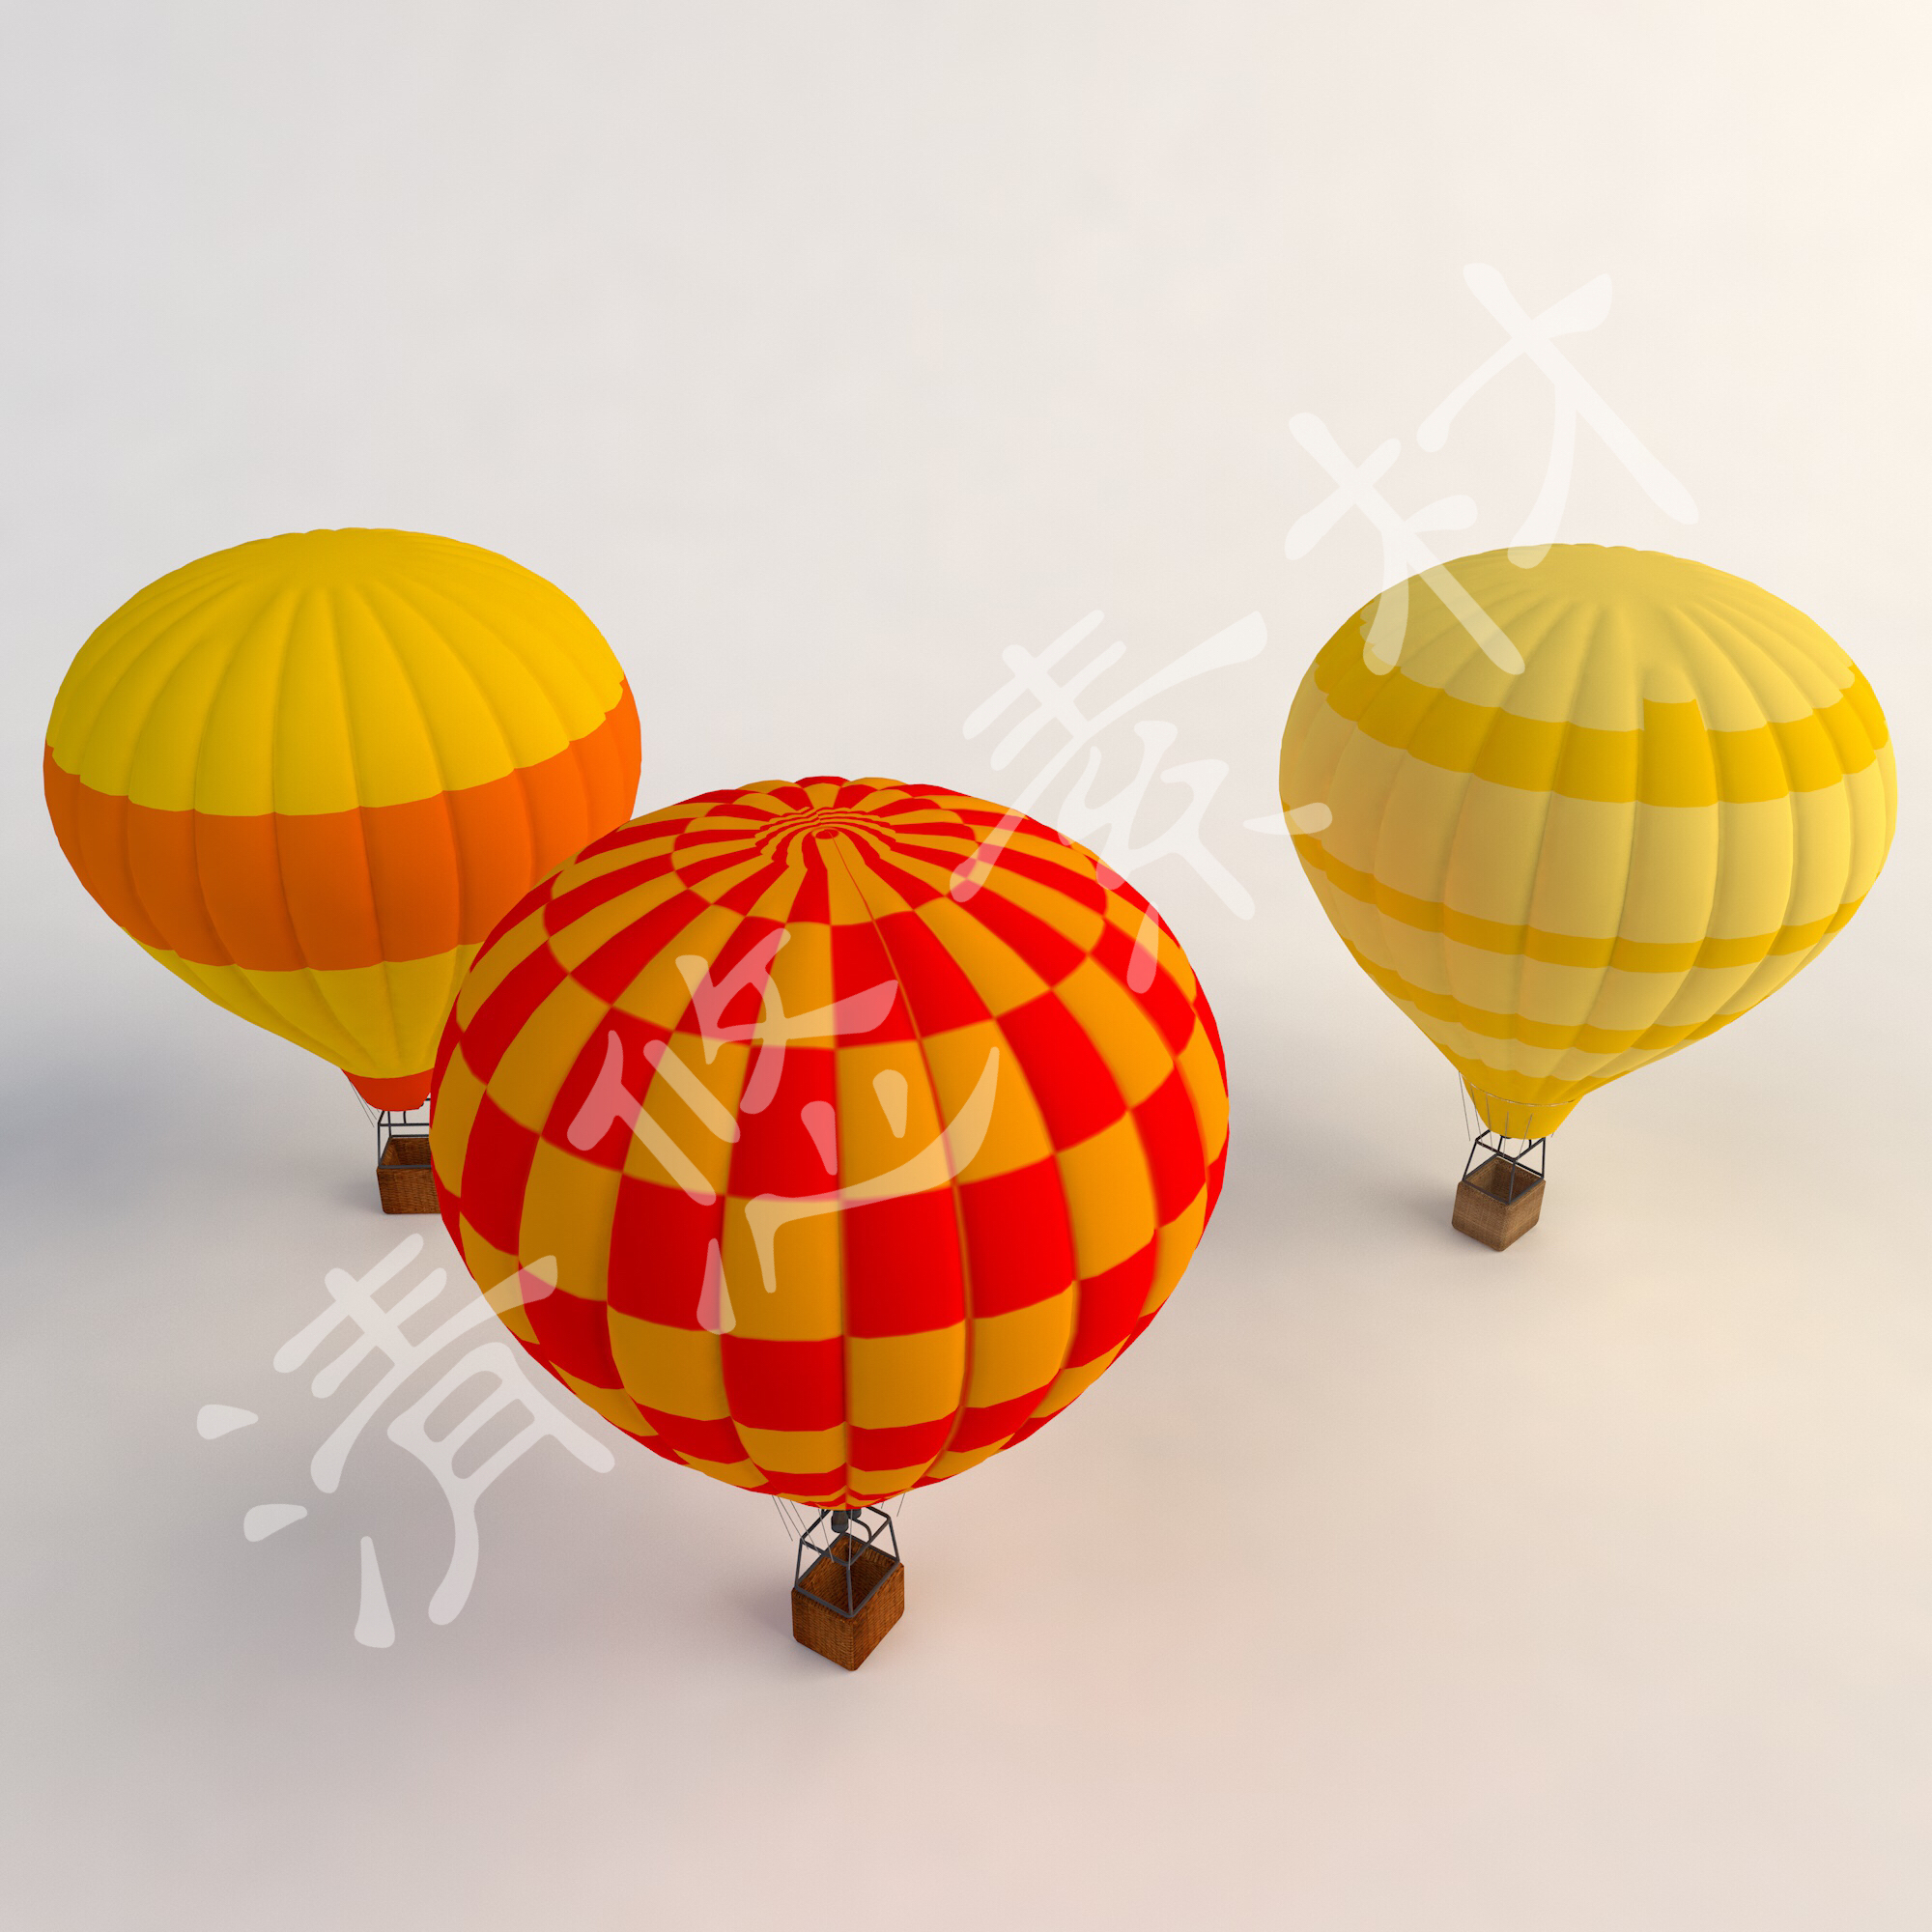 卡通彩色燃气球3dmax c4d热气球模型 吊篮 fbx格式 338